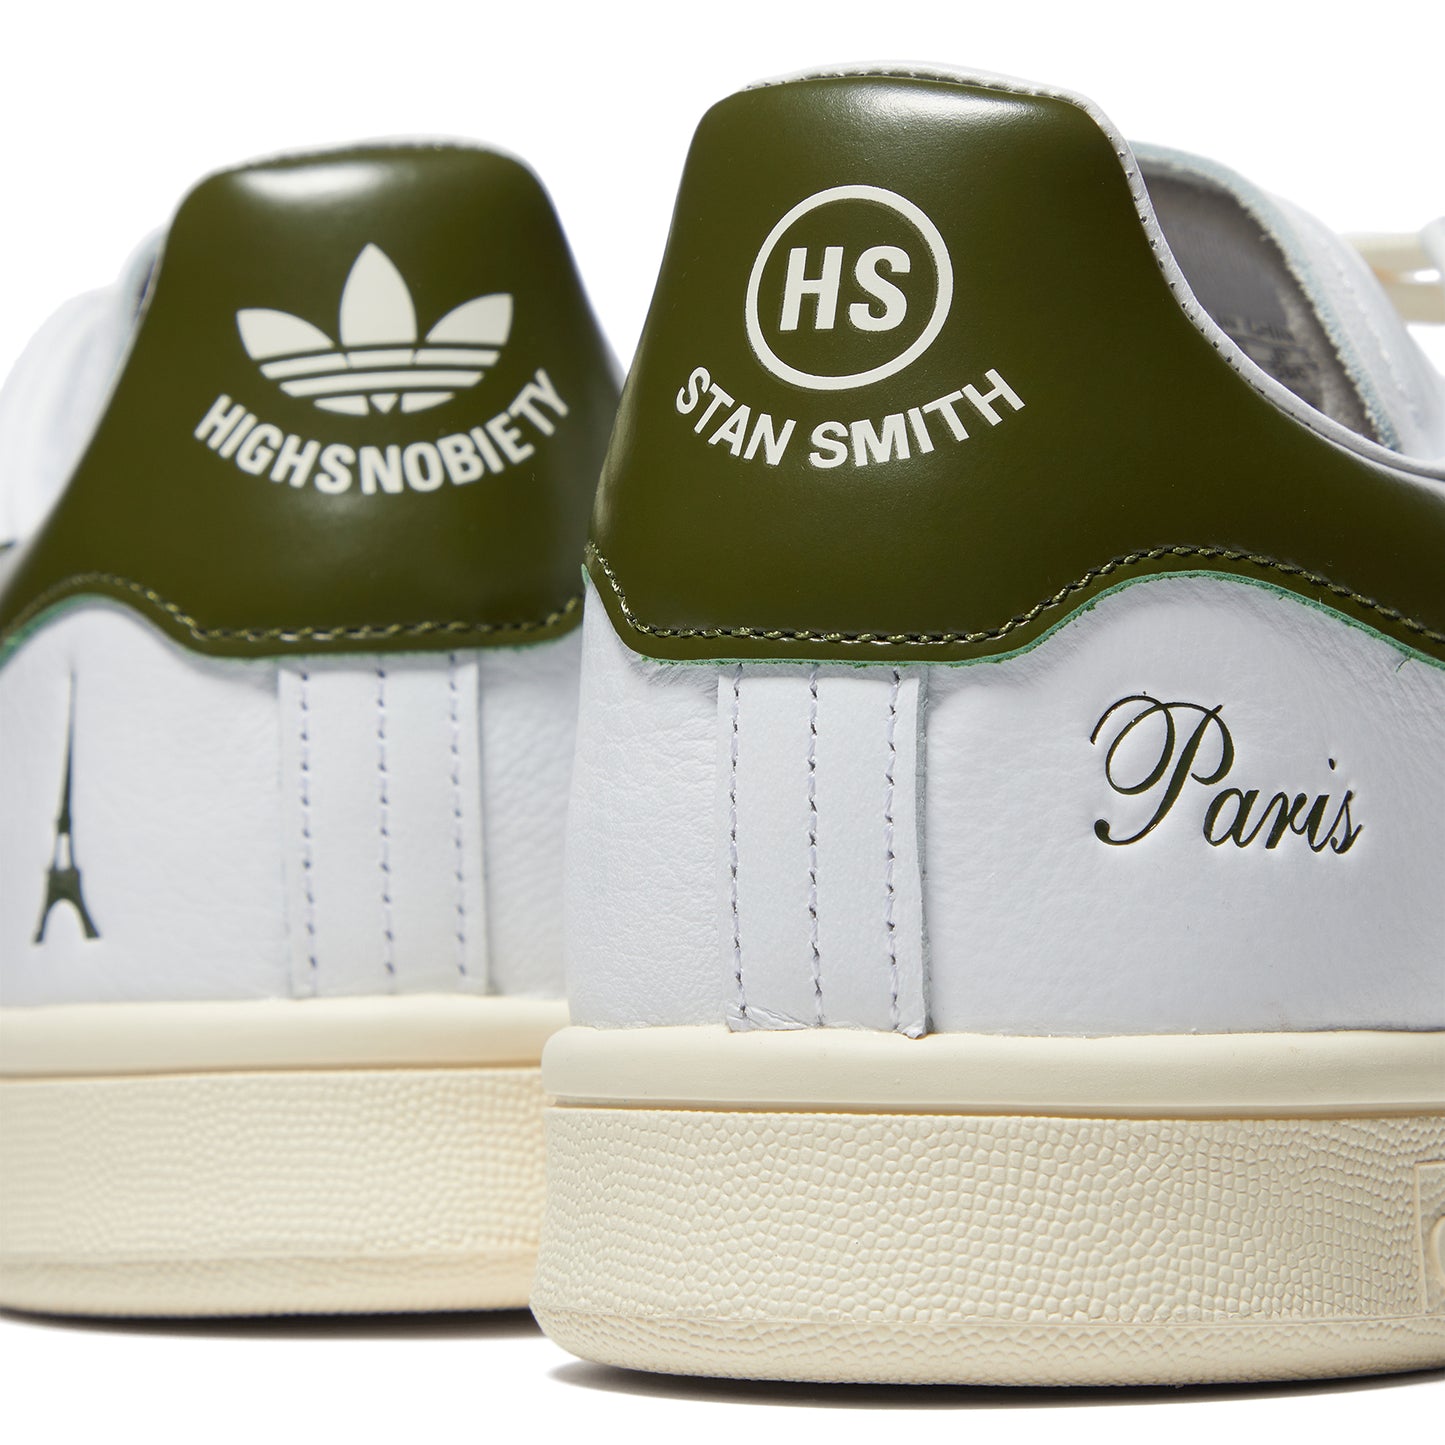 adidas Stan Smith Highsnobiety (Feather White/Cloud White)